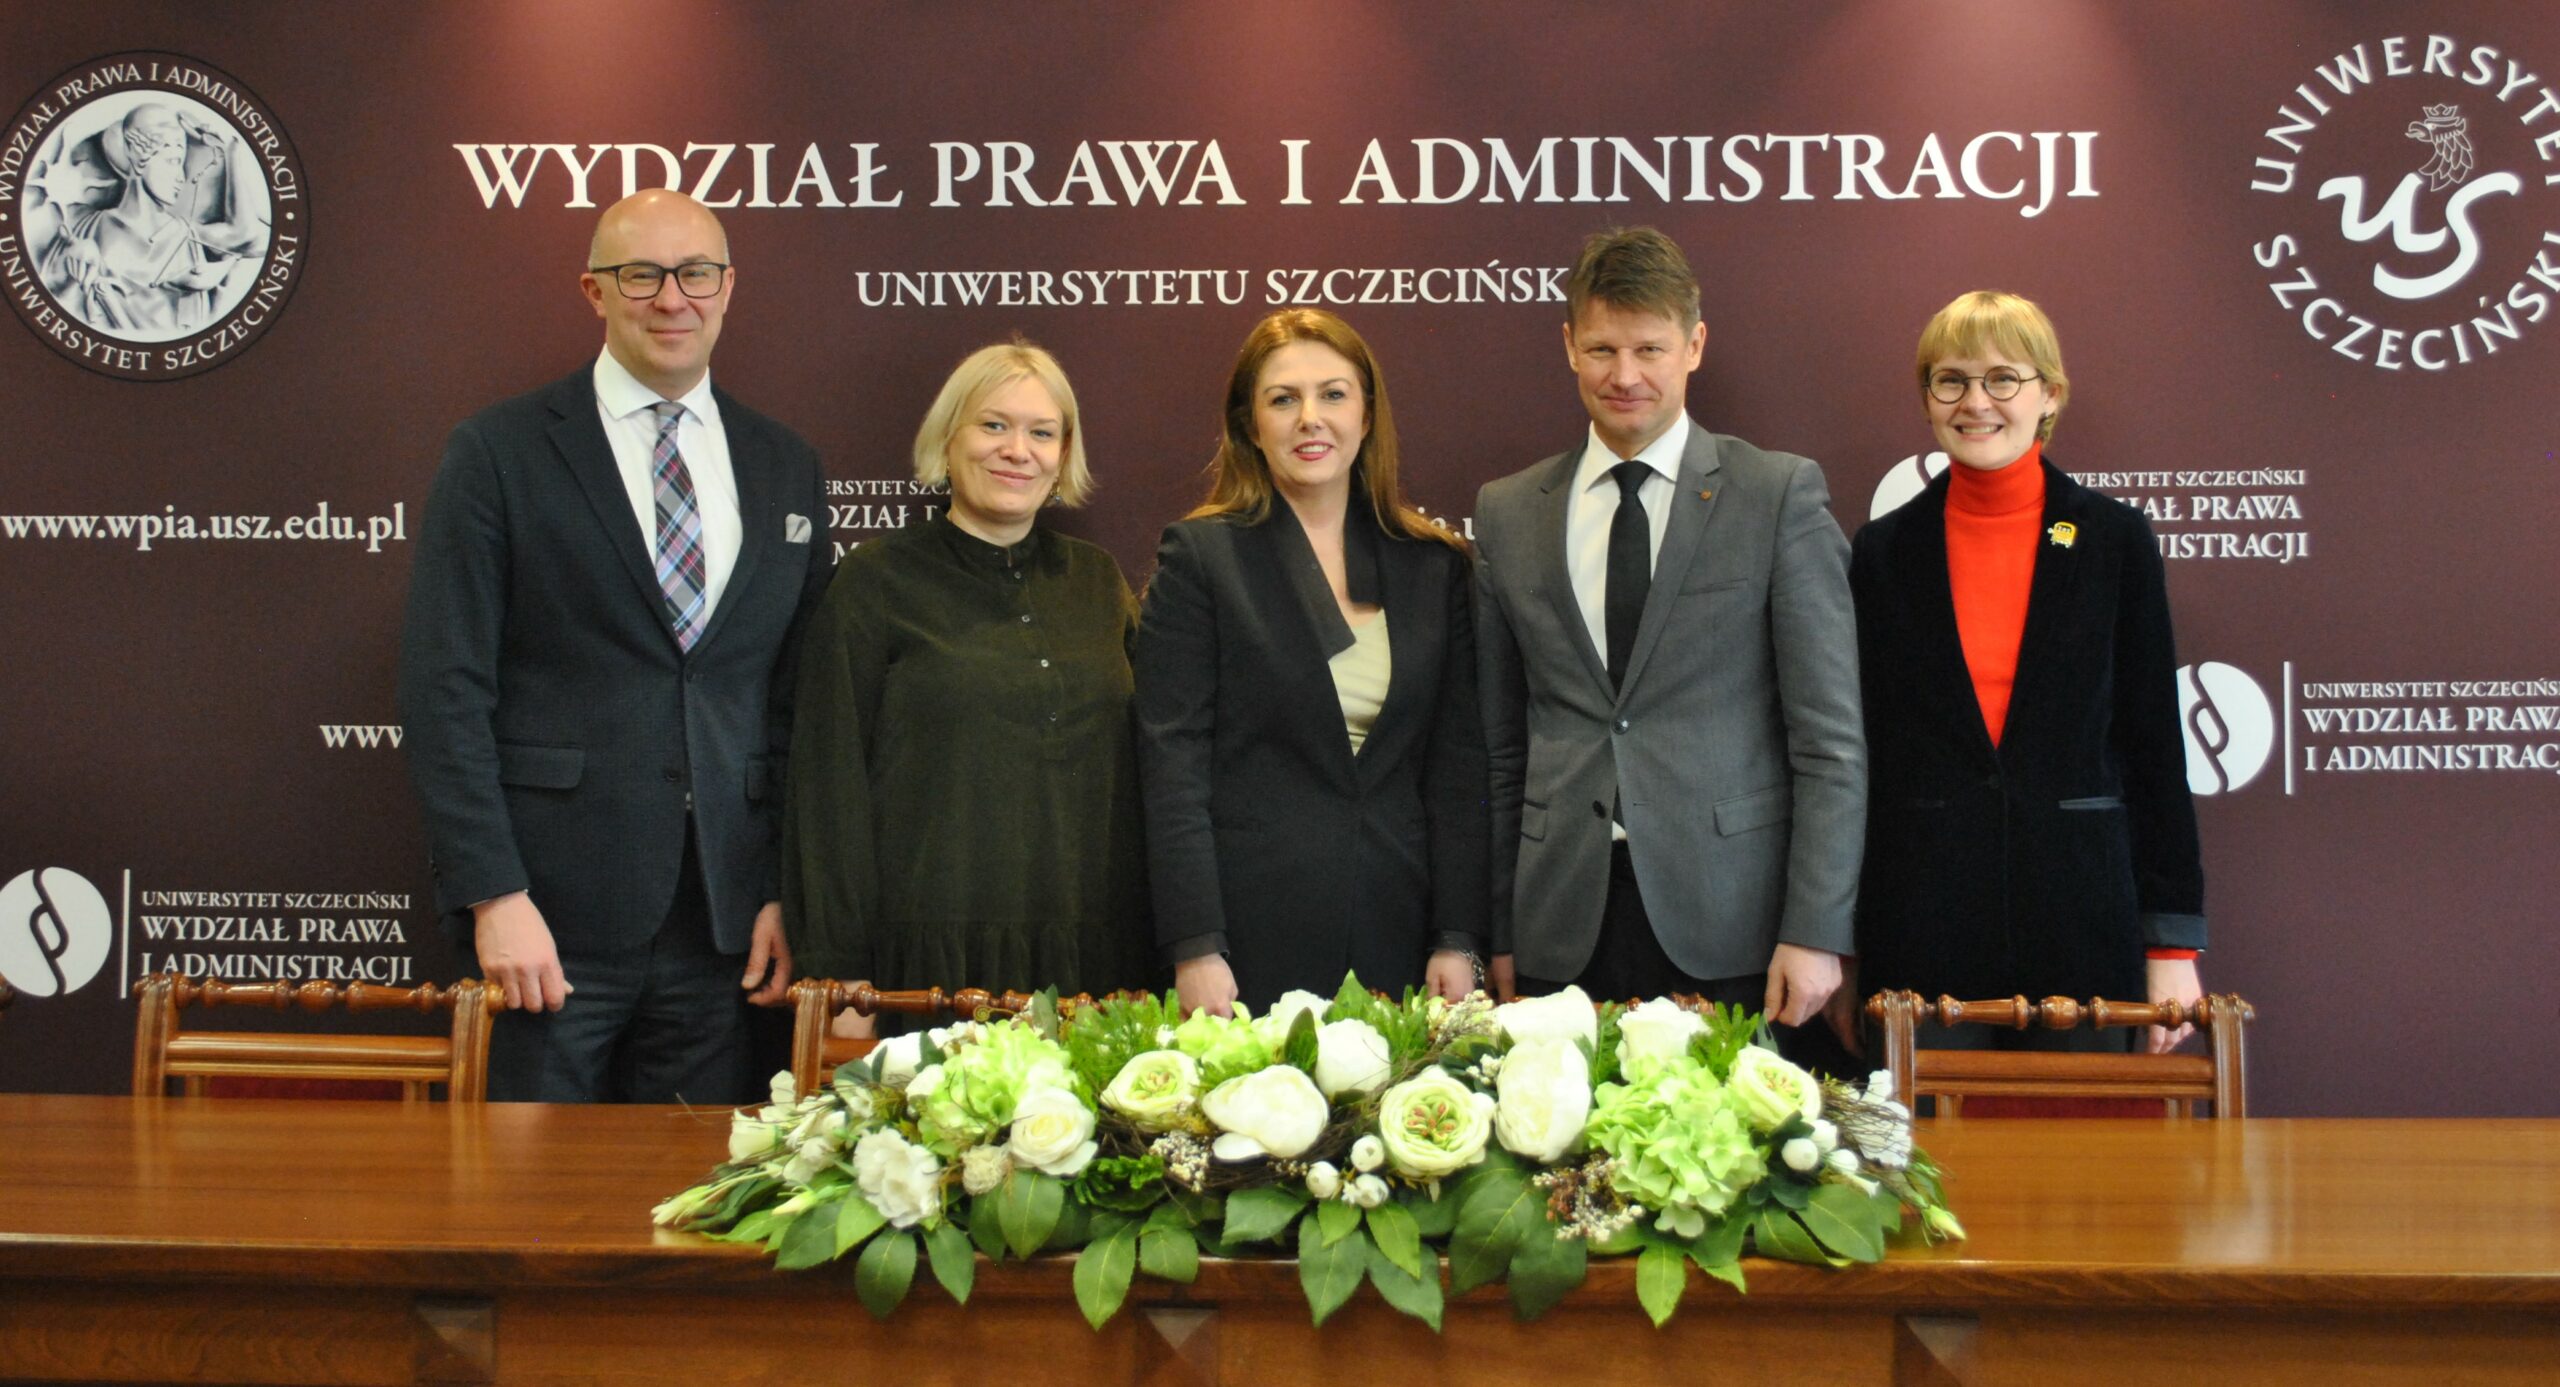 Wizyta władz Wydziału Prawa Uniwersytetu Wileńskiego